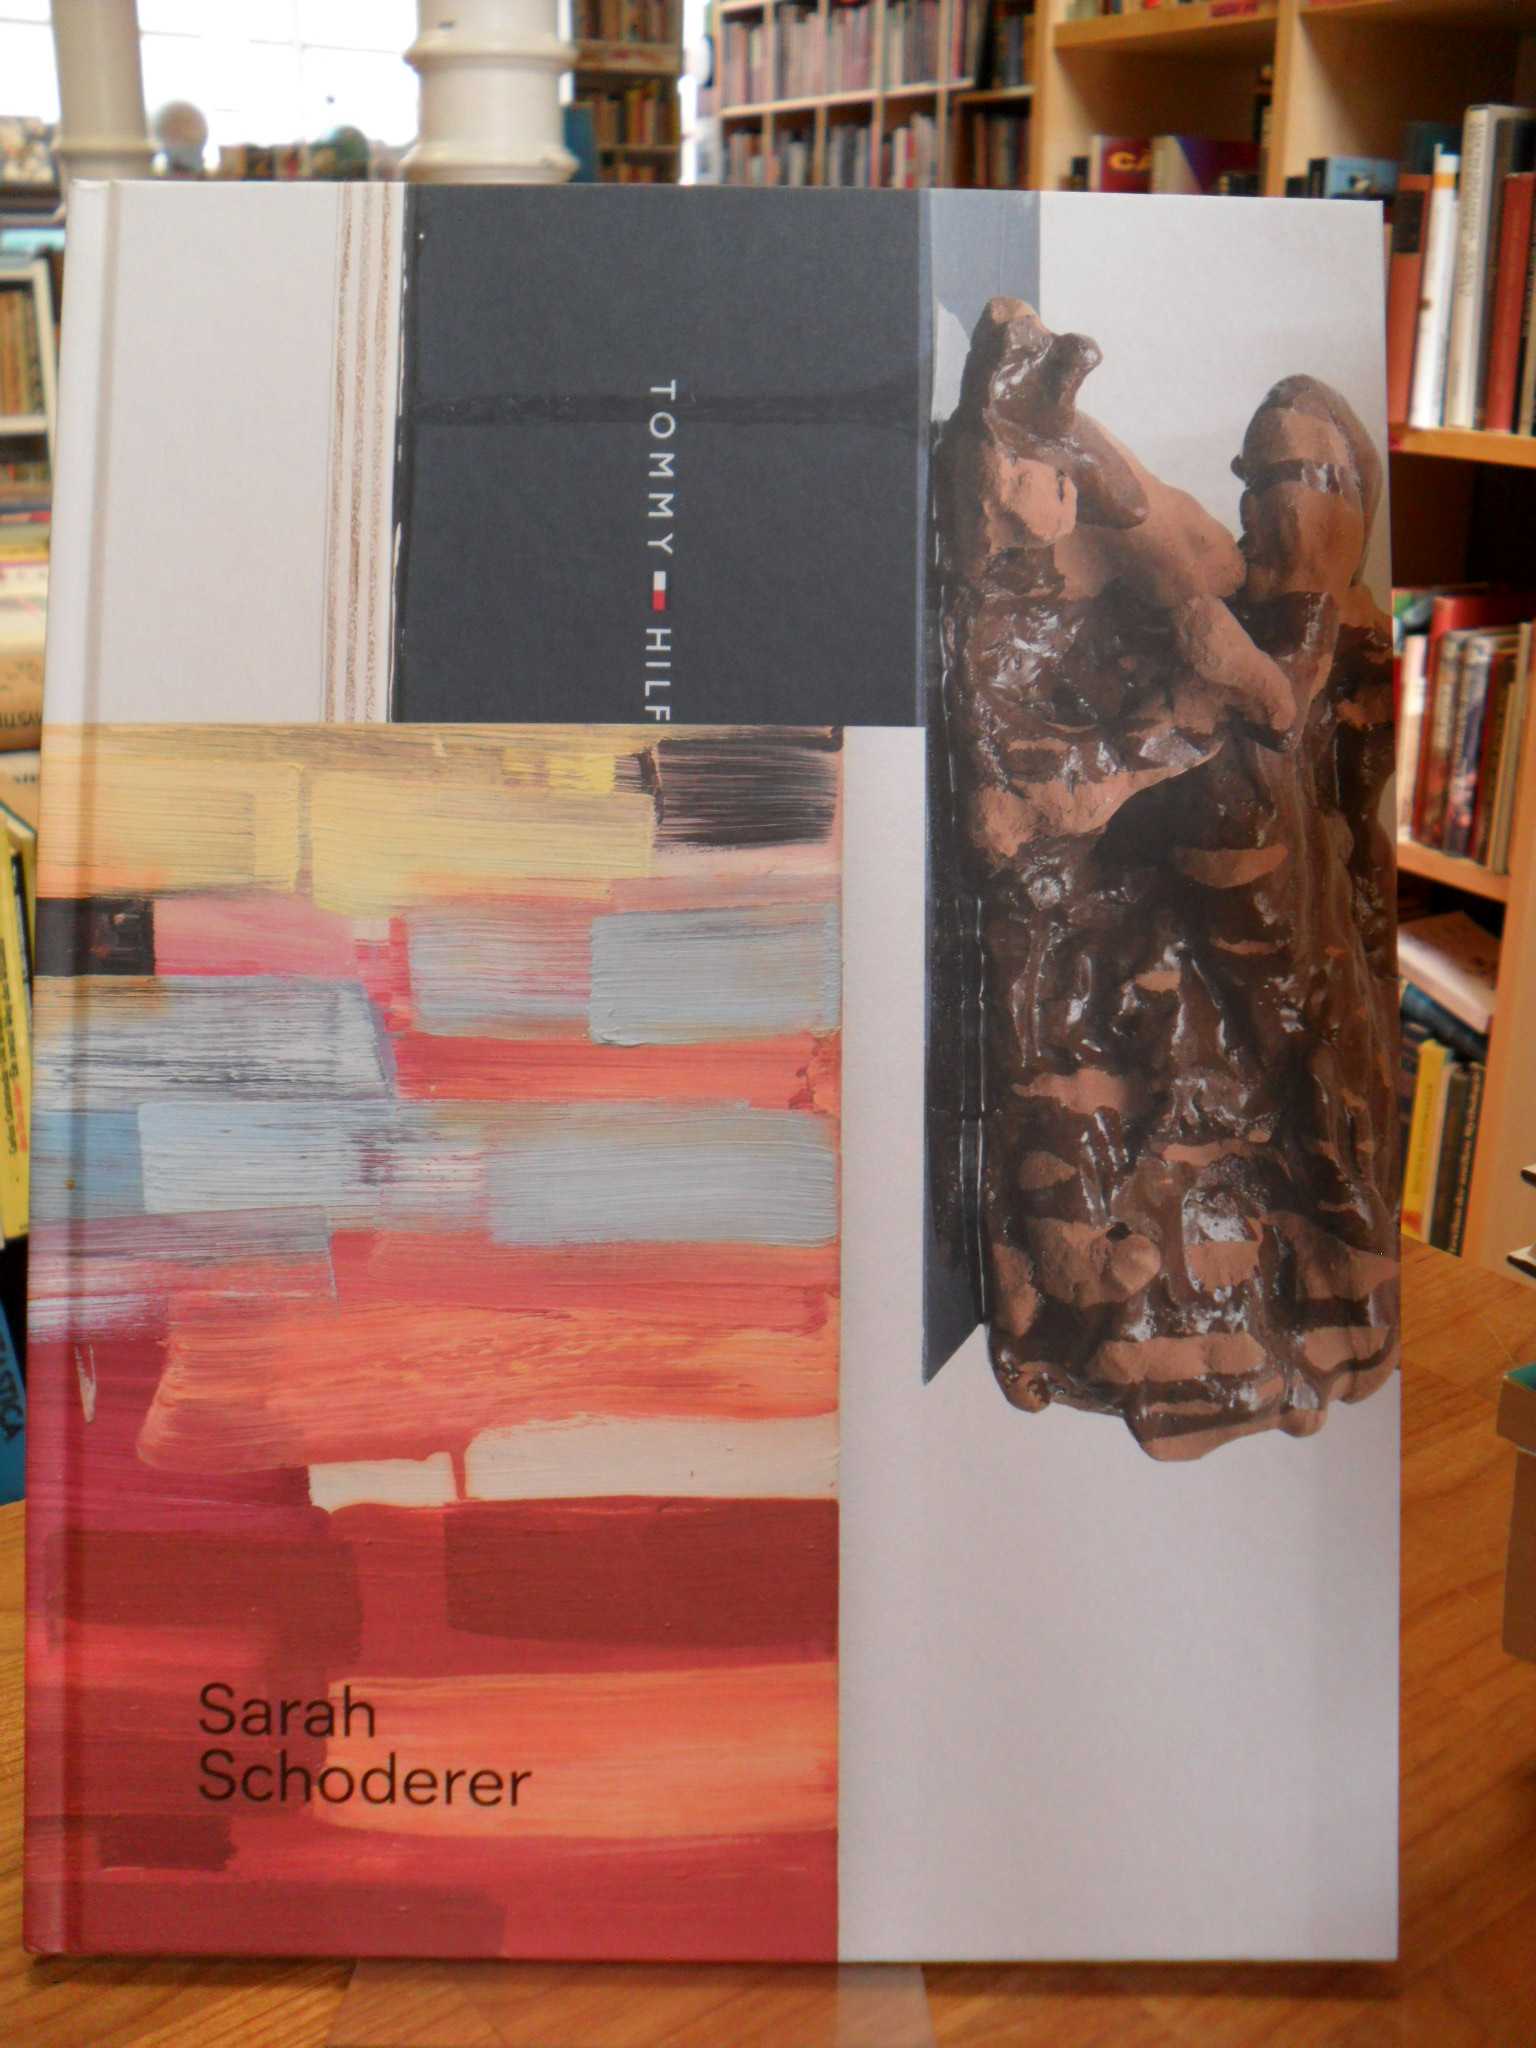 Kunsthalle Darmstadt [Herausgeber], Sarah Schoderer – 2012-2014,